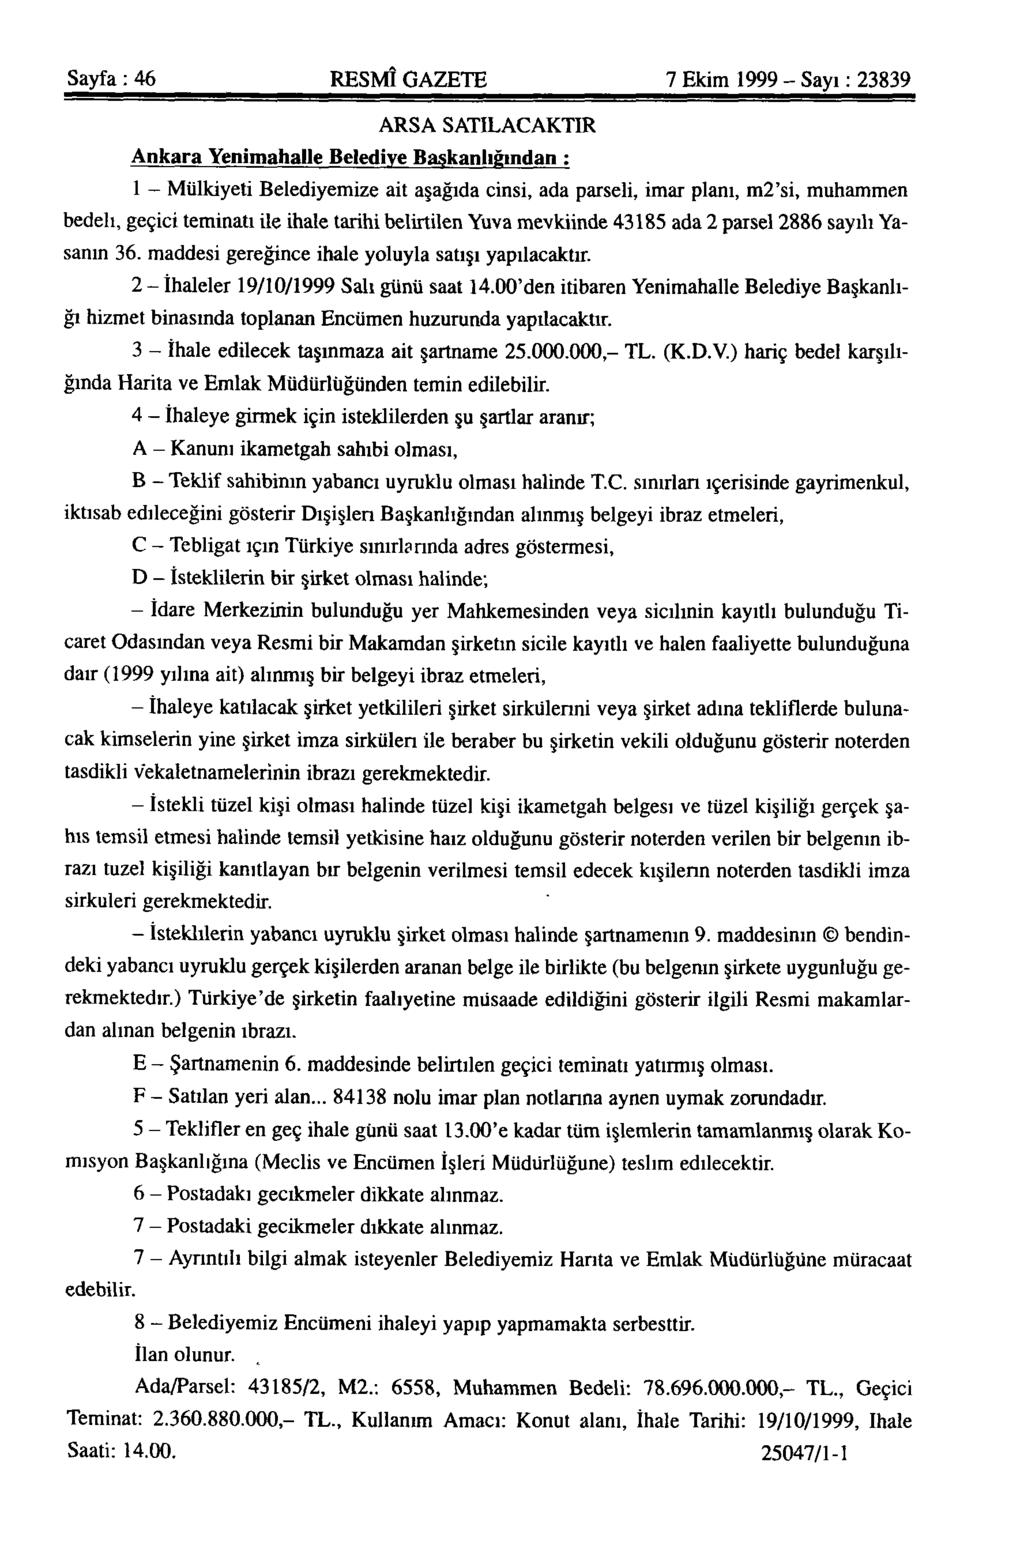 Sayfa: 46 RESMÎ GAZETE 7 Ekim 1999 - Sayı: 23839 ARSA SATILACAKTIR Ankara Yenimahalle Belediye Başkanlığından ; 1 - Mülkiyeti Belediyemize ait aşağıda cinsi, ada parseli, imar planı, m2'si, muhammen